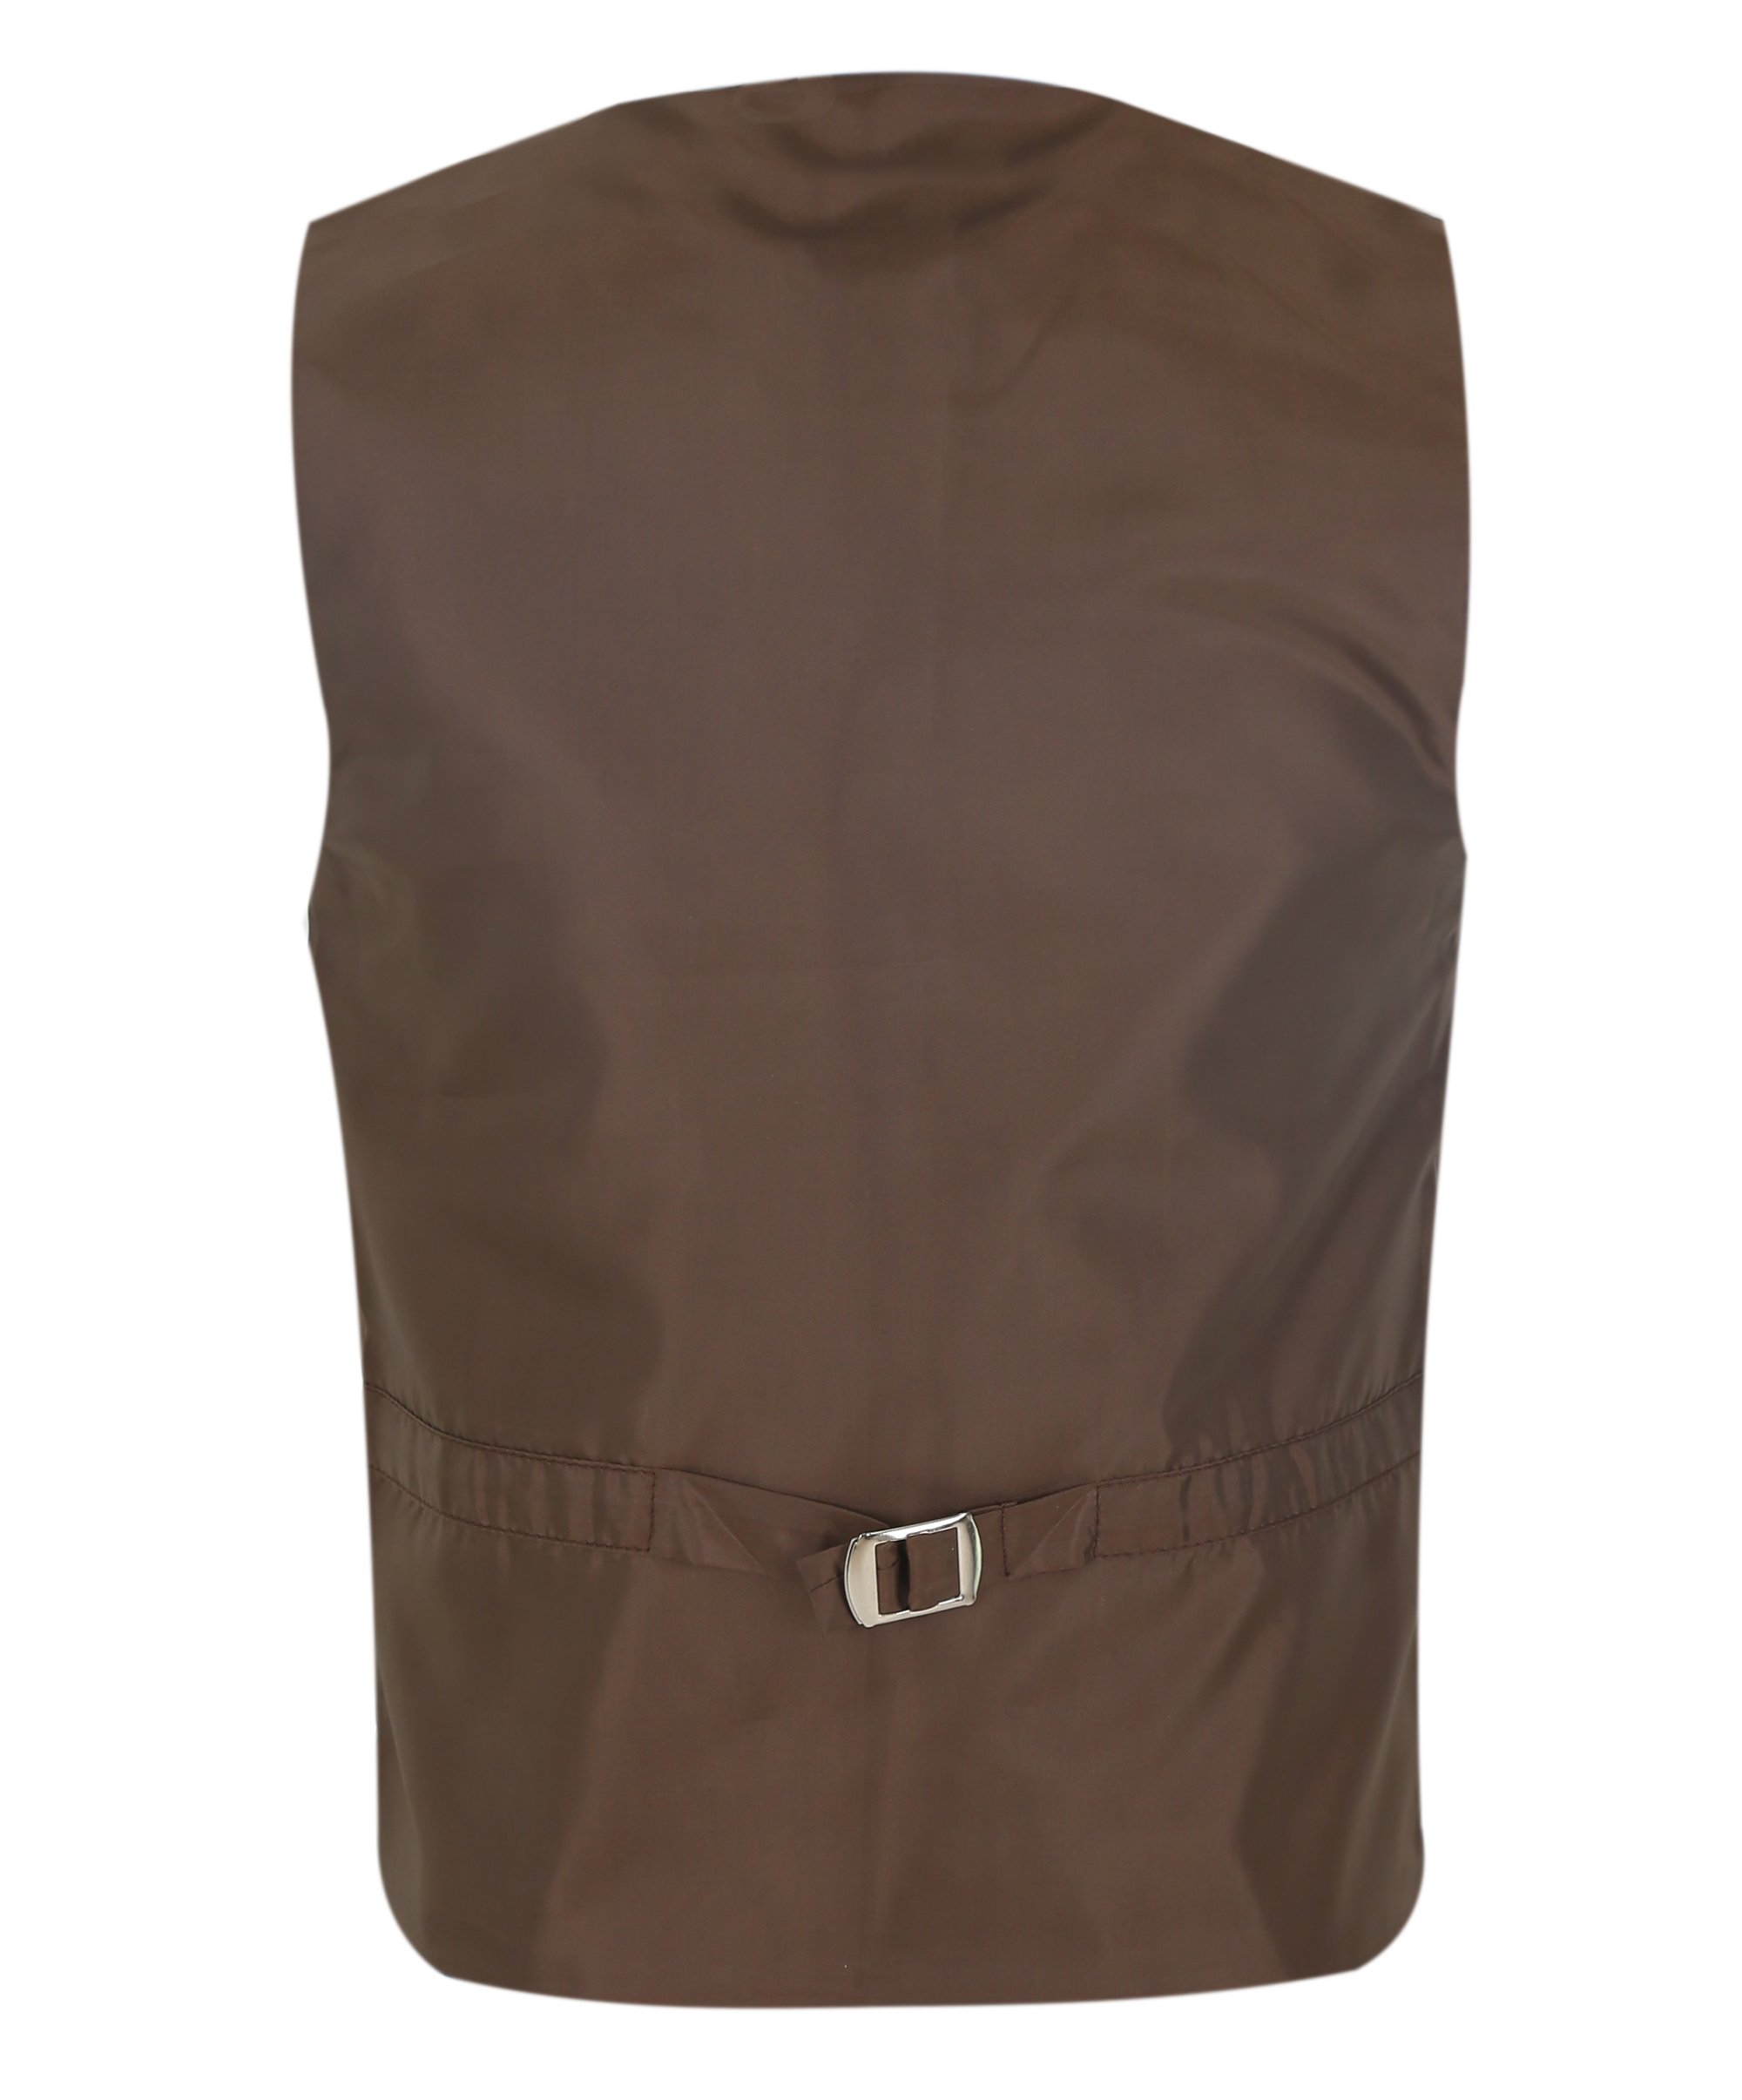 Boys Herringbone Tweed Waistcoat Suit Set - Light Brown